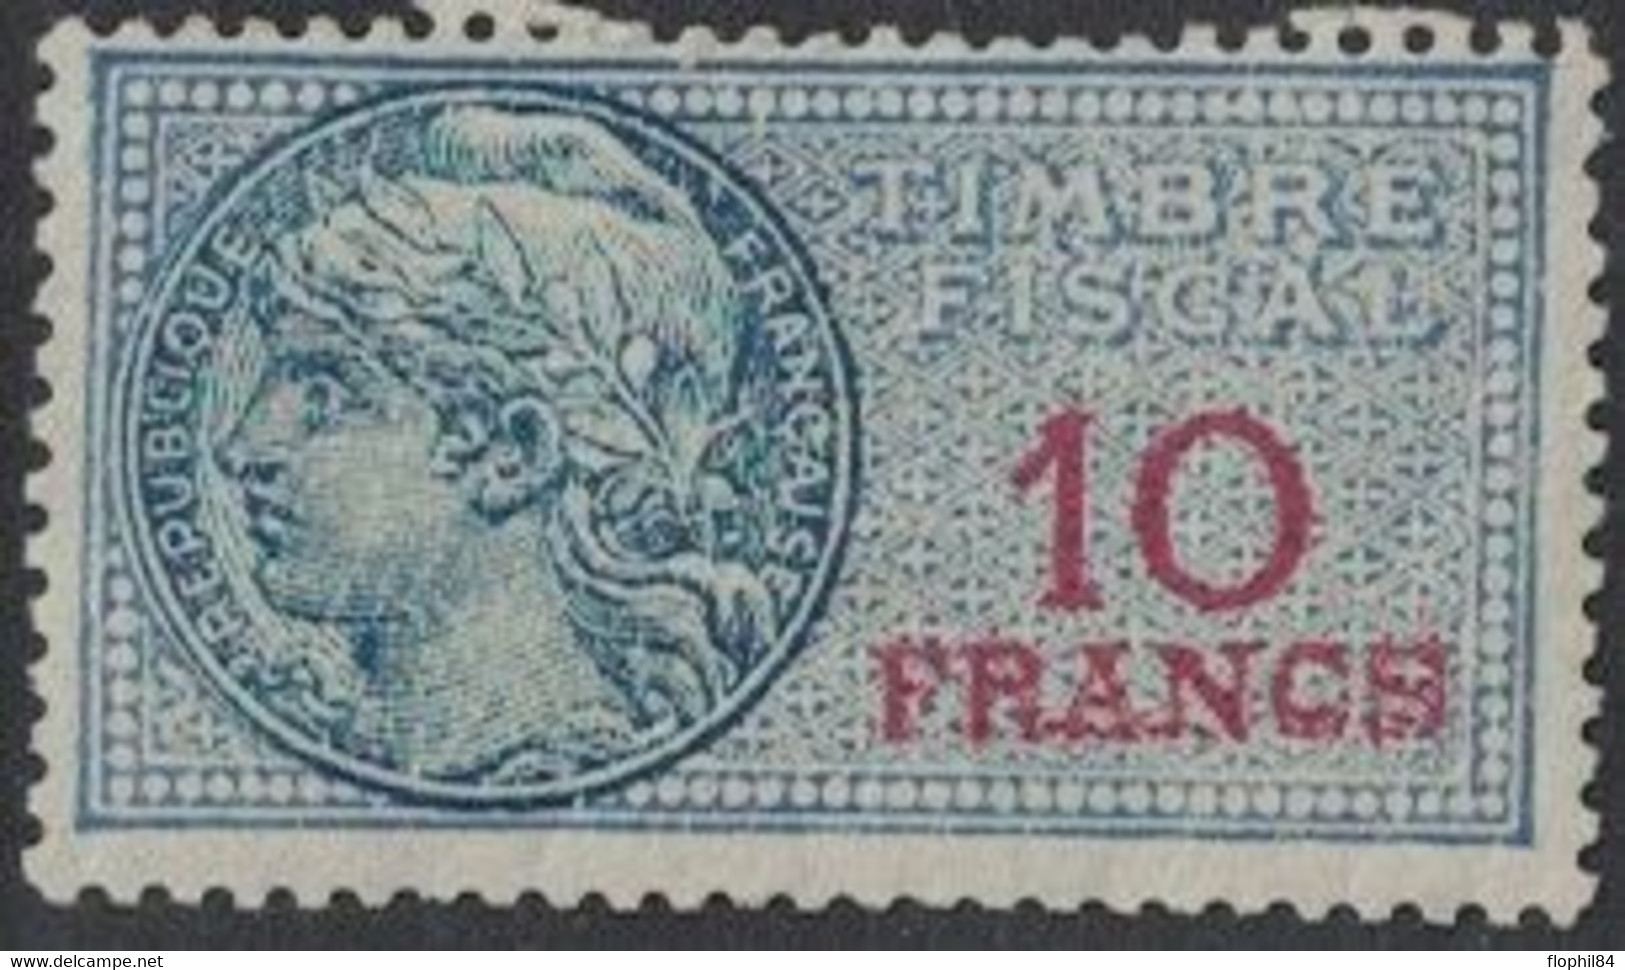 TIMBRE MOBILE - FISCAUX GENERAUX - N°142 - AVEC GOMME SANS TRACE - COTE 3€. - Stamps